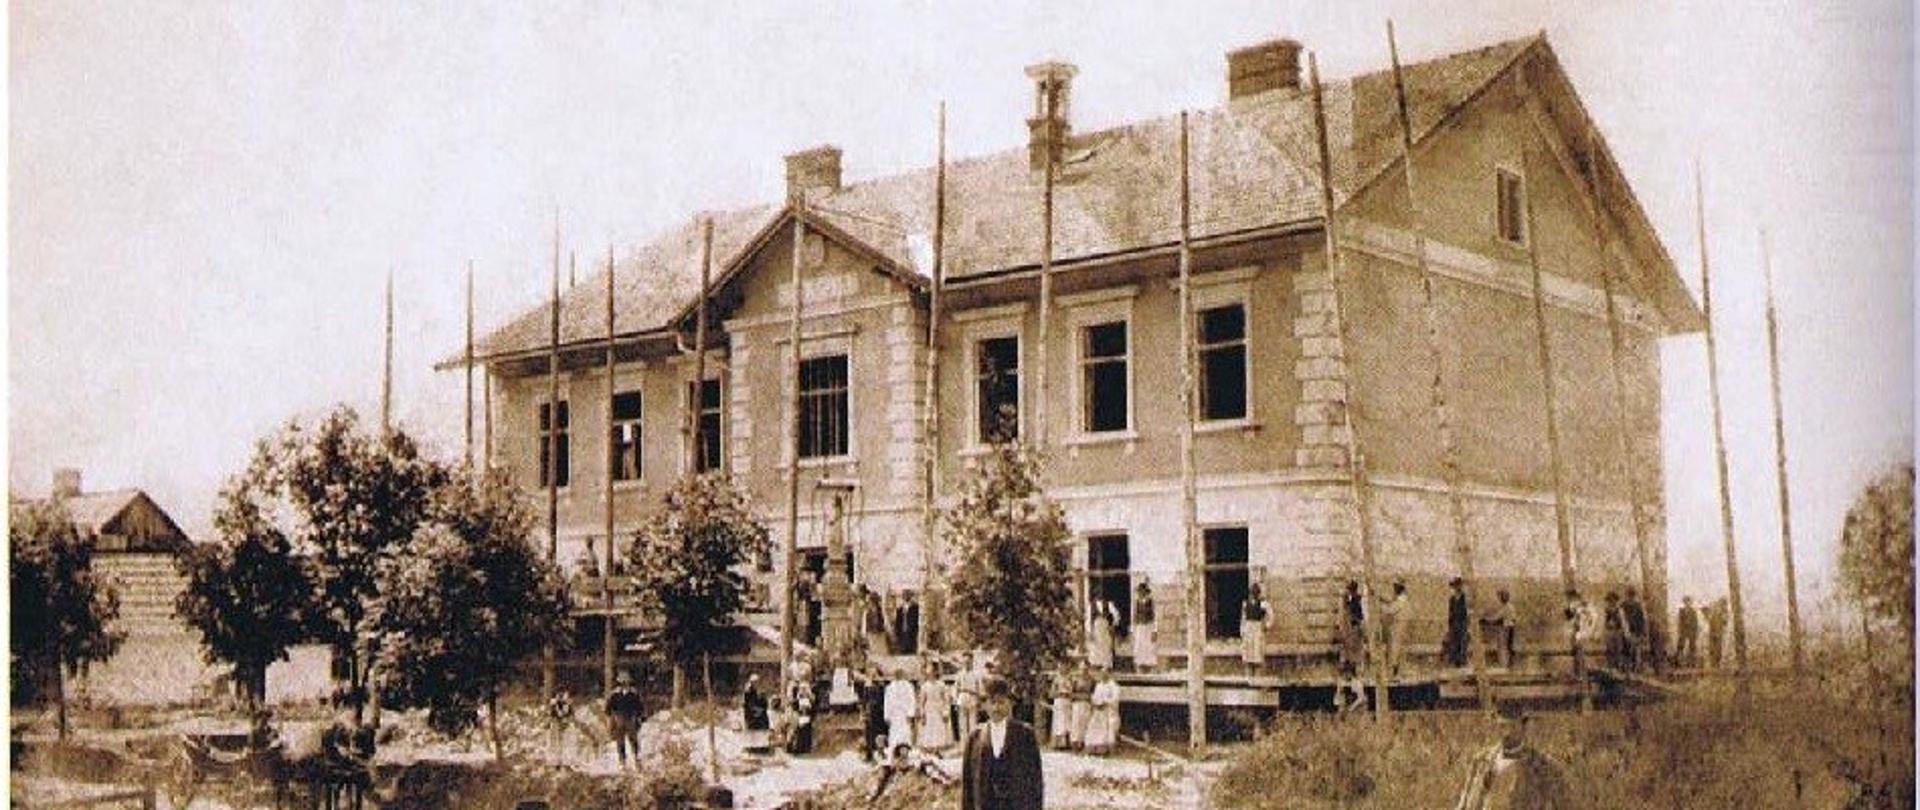 Budowa szkoły w Kalwarii Zebrzydowskiej w budowie – rok 1891 lub 1892
Własność Marek Ćwikła